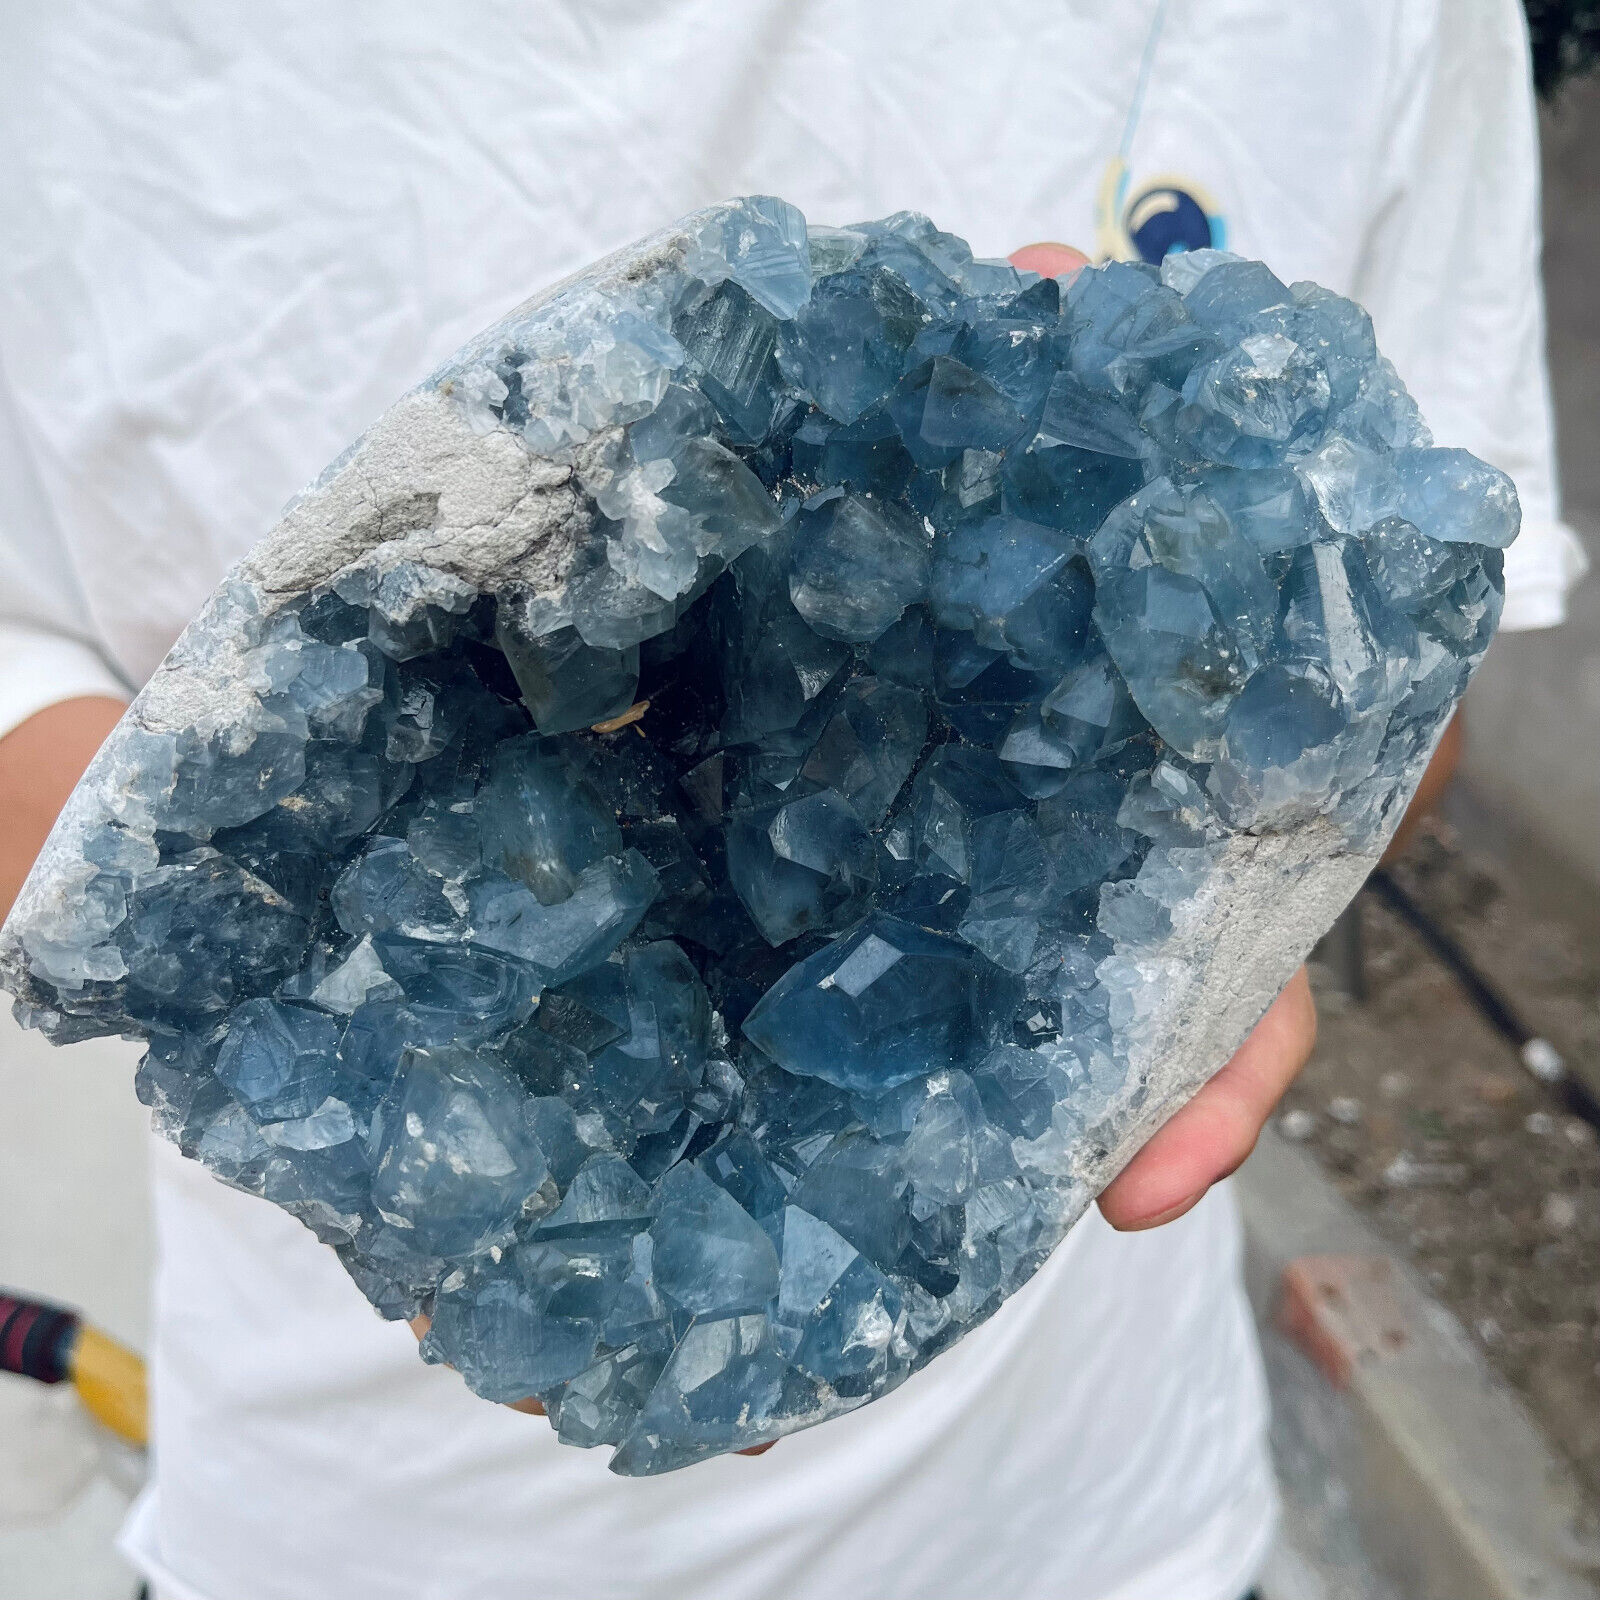 6.2lb Large Natural Blue Celestite Crystal Geode Quartz Cluster Mineral Specime